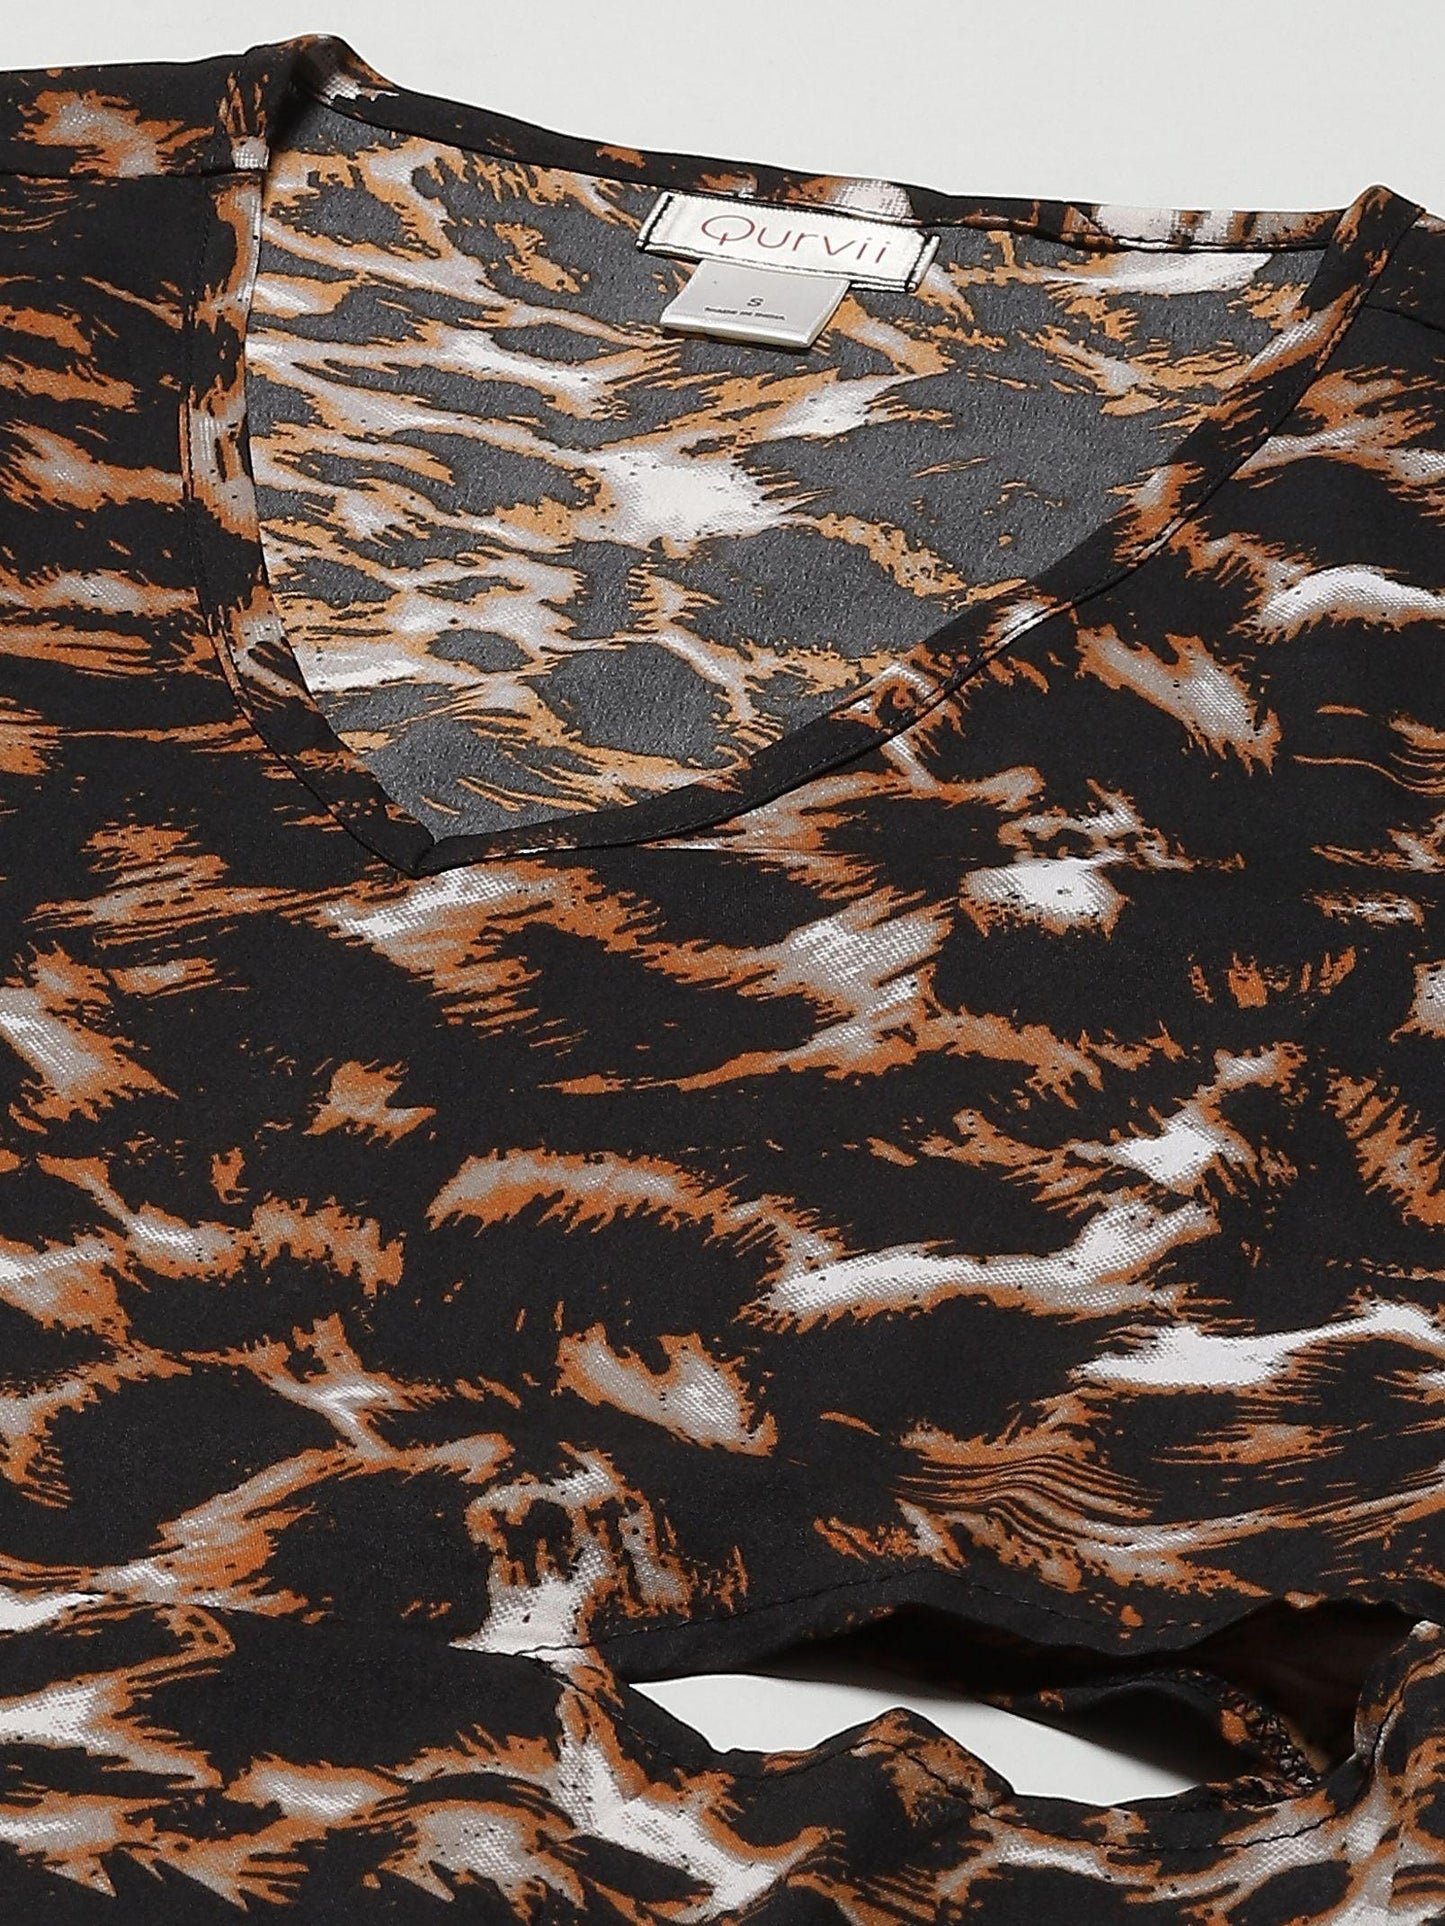 Qurvii Black And Brown Tiger Print Dress - Qurvii India